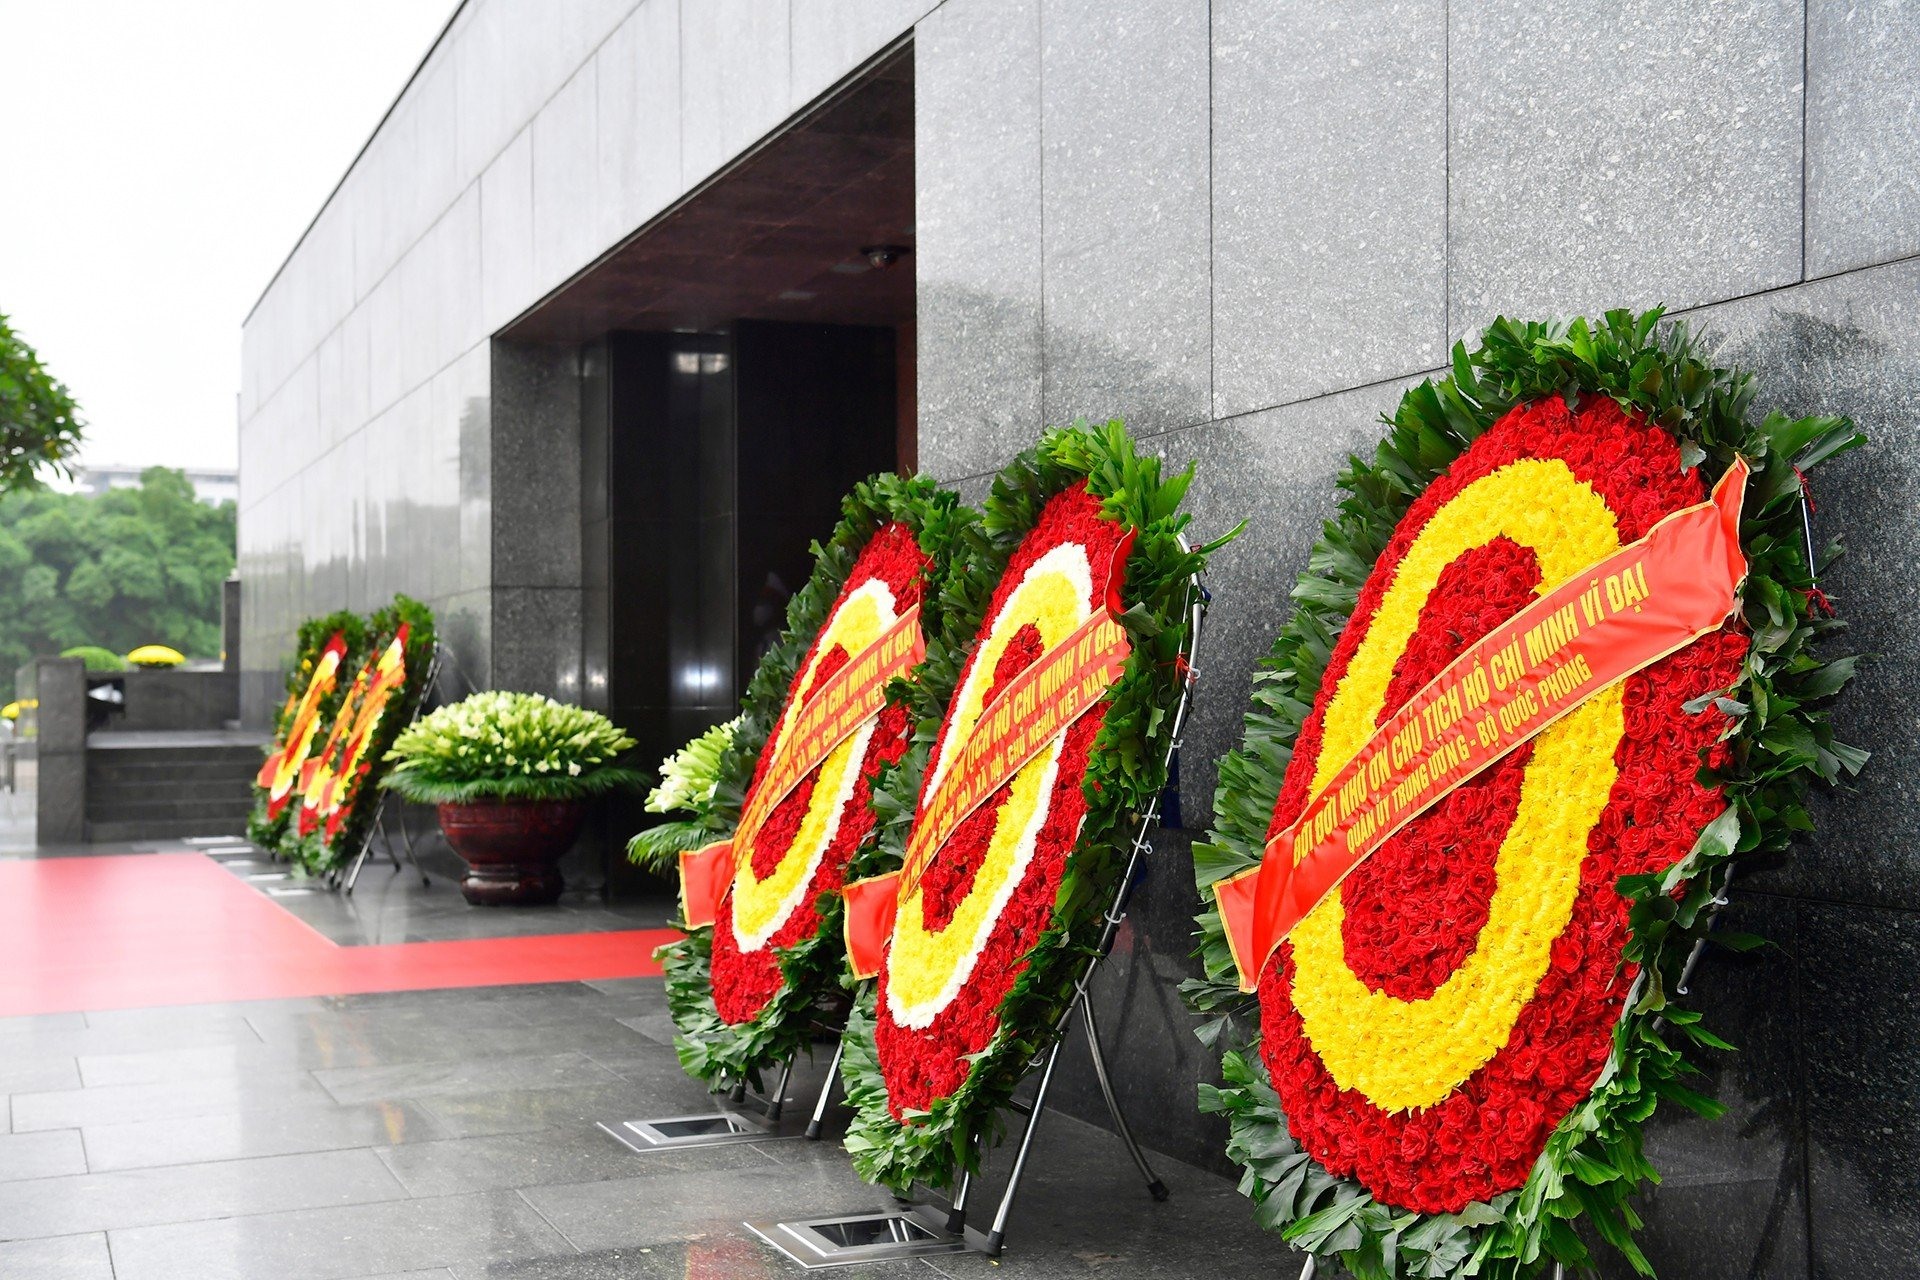 Vòng hoa của Đoàn mang dòng chữ “Đời đời nhớ ơn Chủ tịch Hồ Chí Minh vĩ đại“.